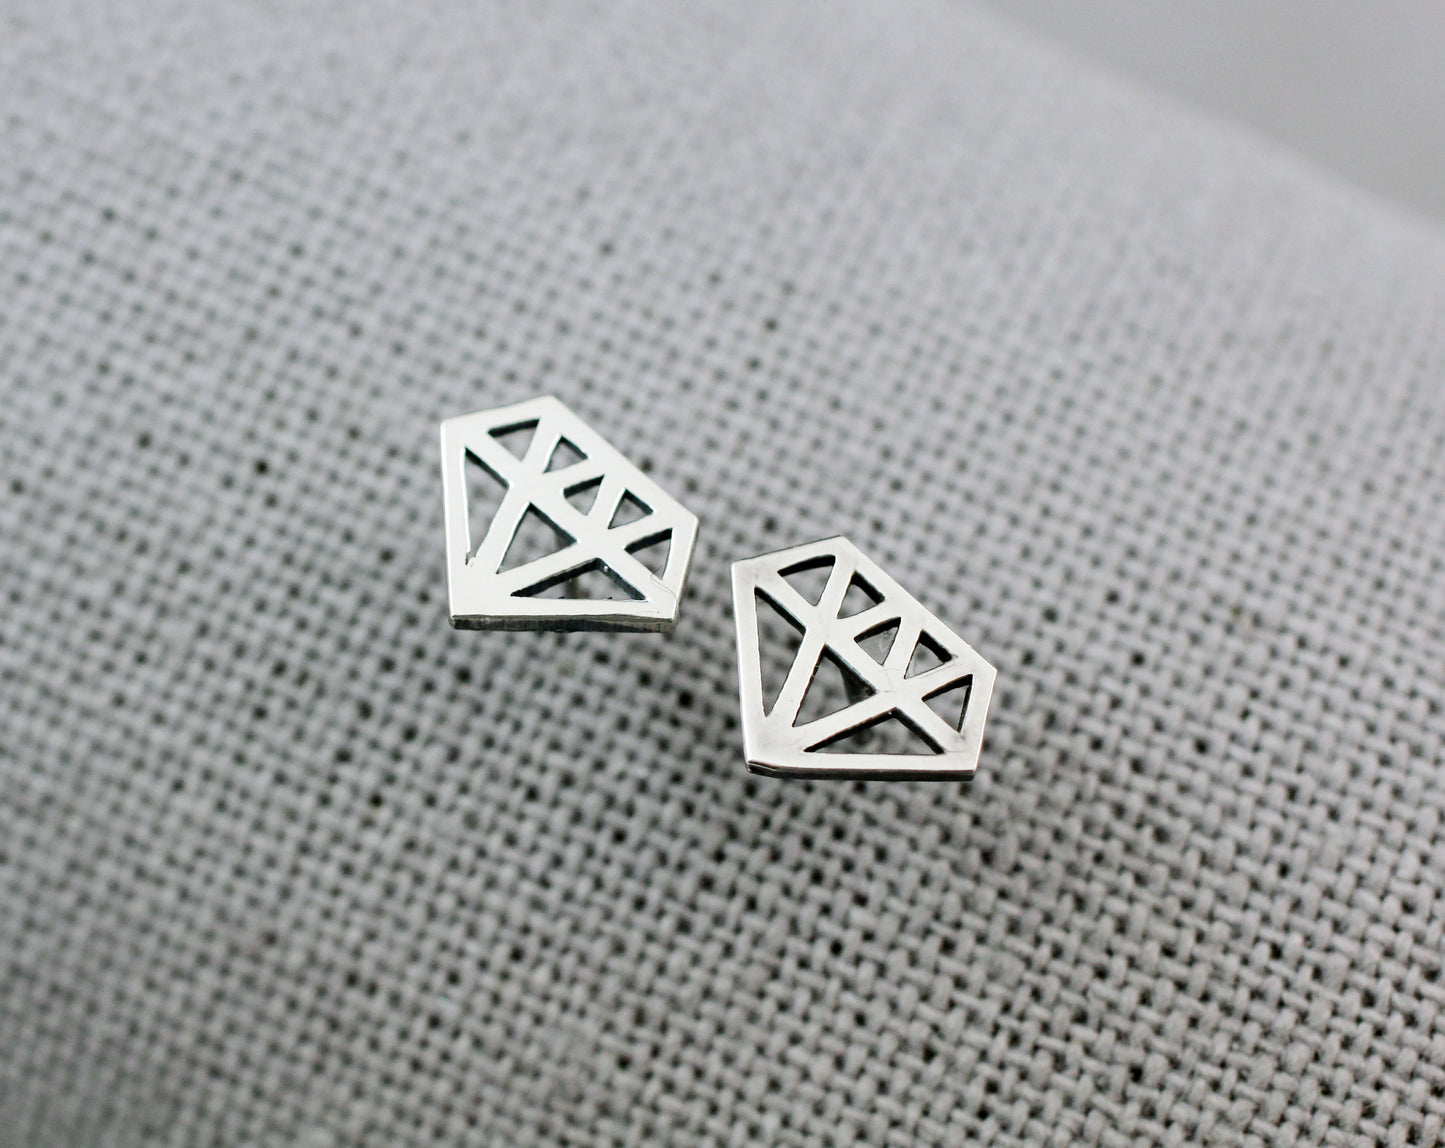 925 Sterling Silver Diamond shape cut out stud earrings , Diamond Silhouette earrings